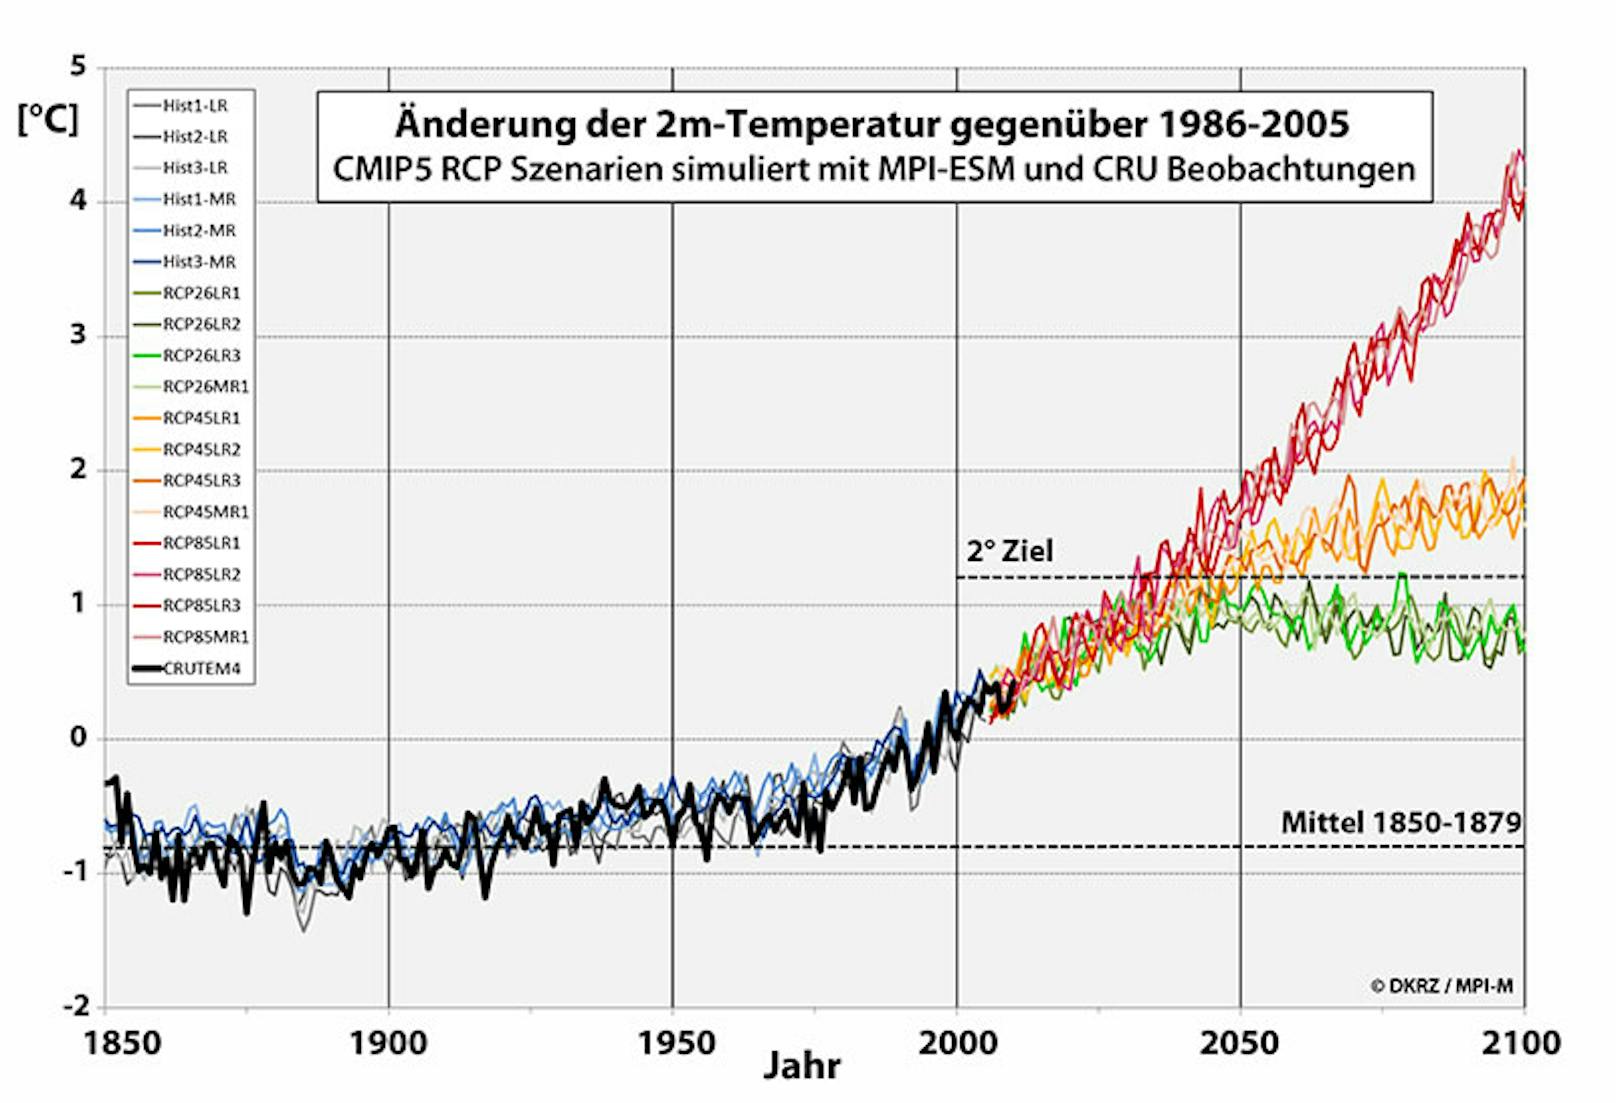 Änderung der globalen Mitteltemperatur bis 2100 nach RCP-Szenarien im Vergleich zum Mittel 1986-2005: RCP8.5 (rot), RCP4.5 (orange), RCP2.6 (grün)